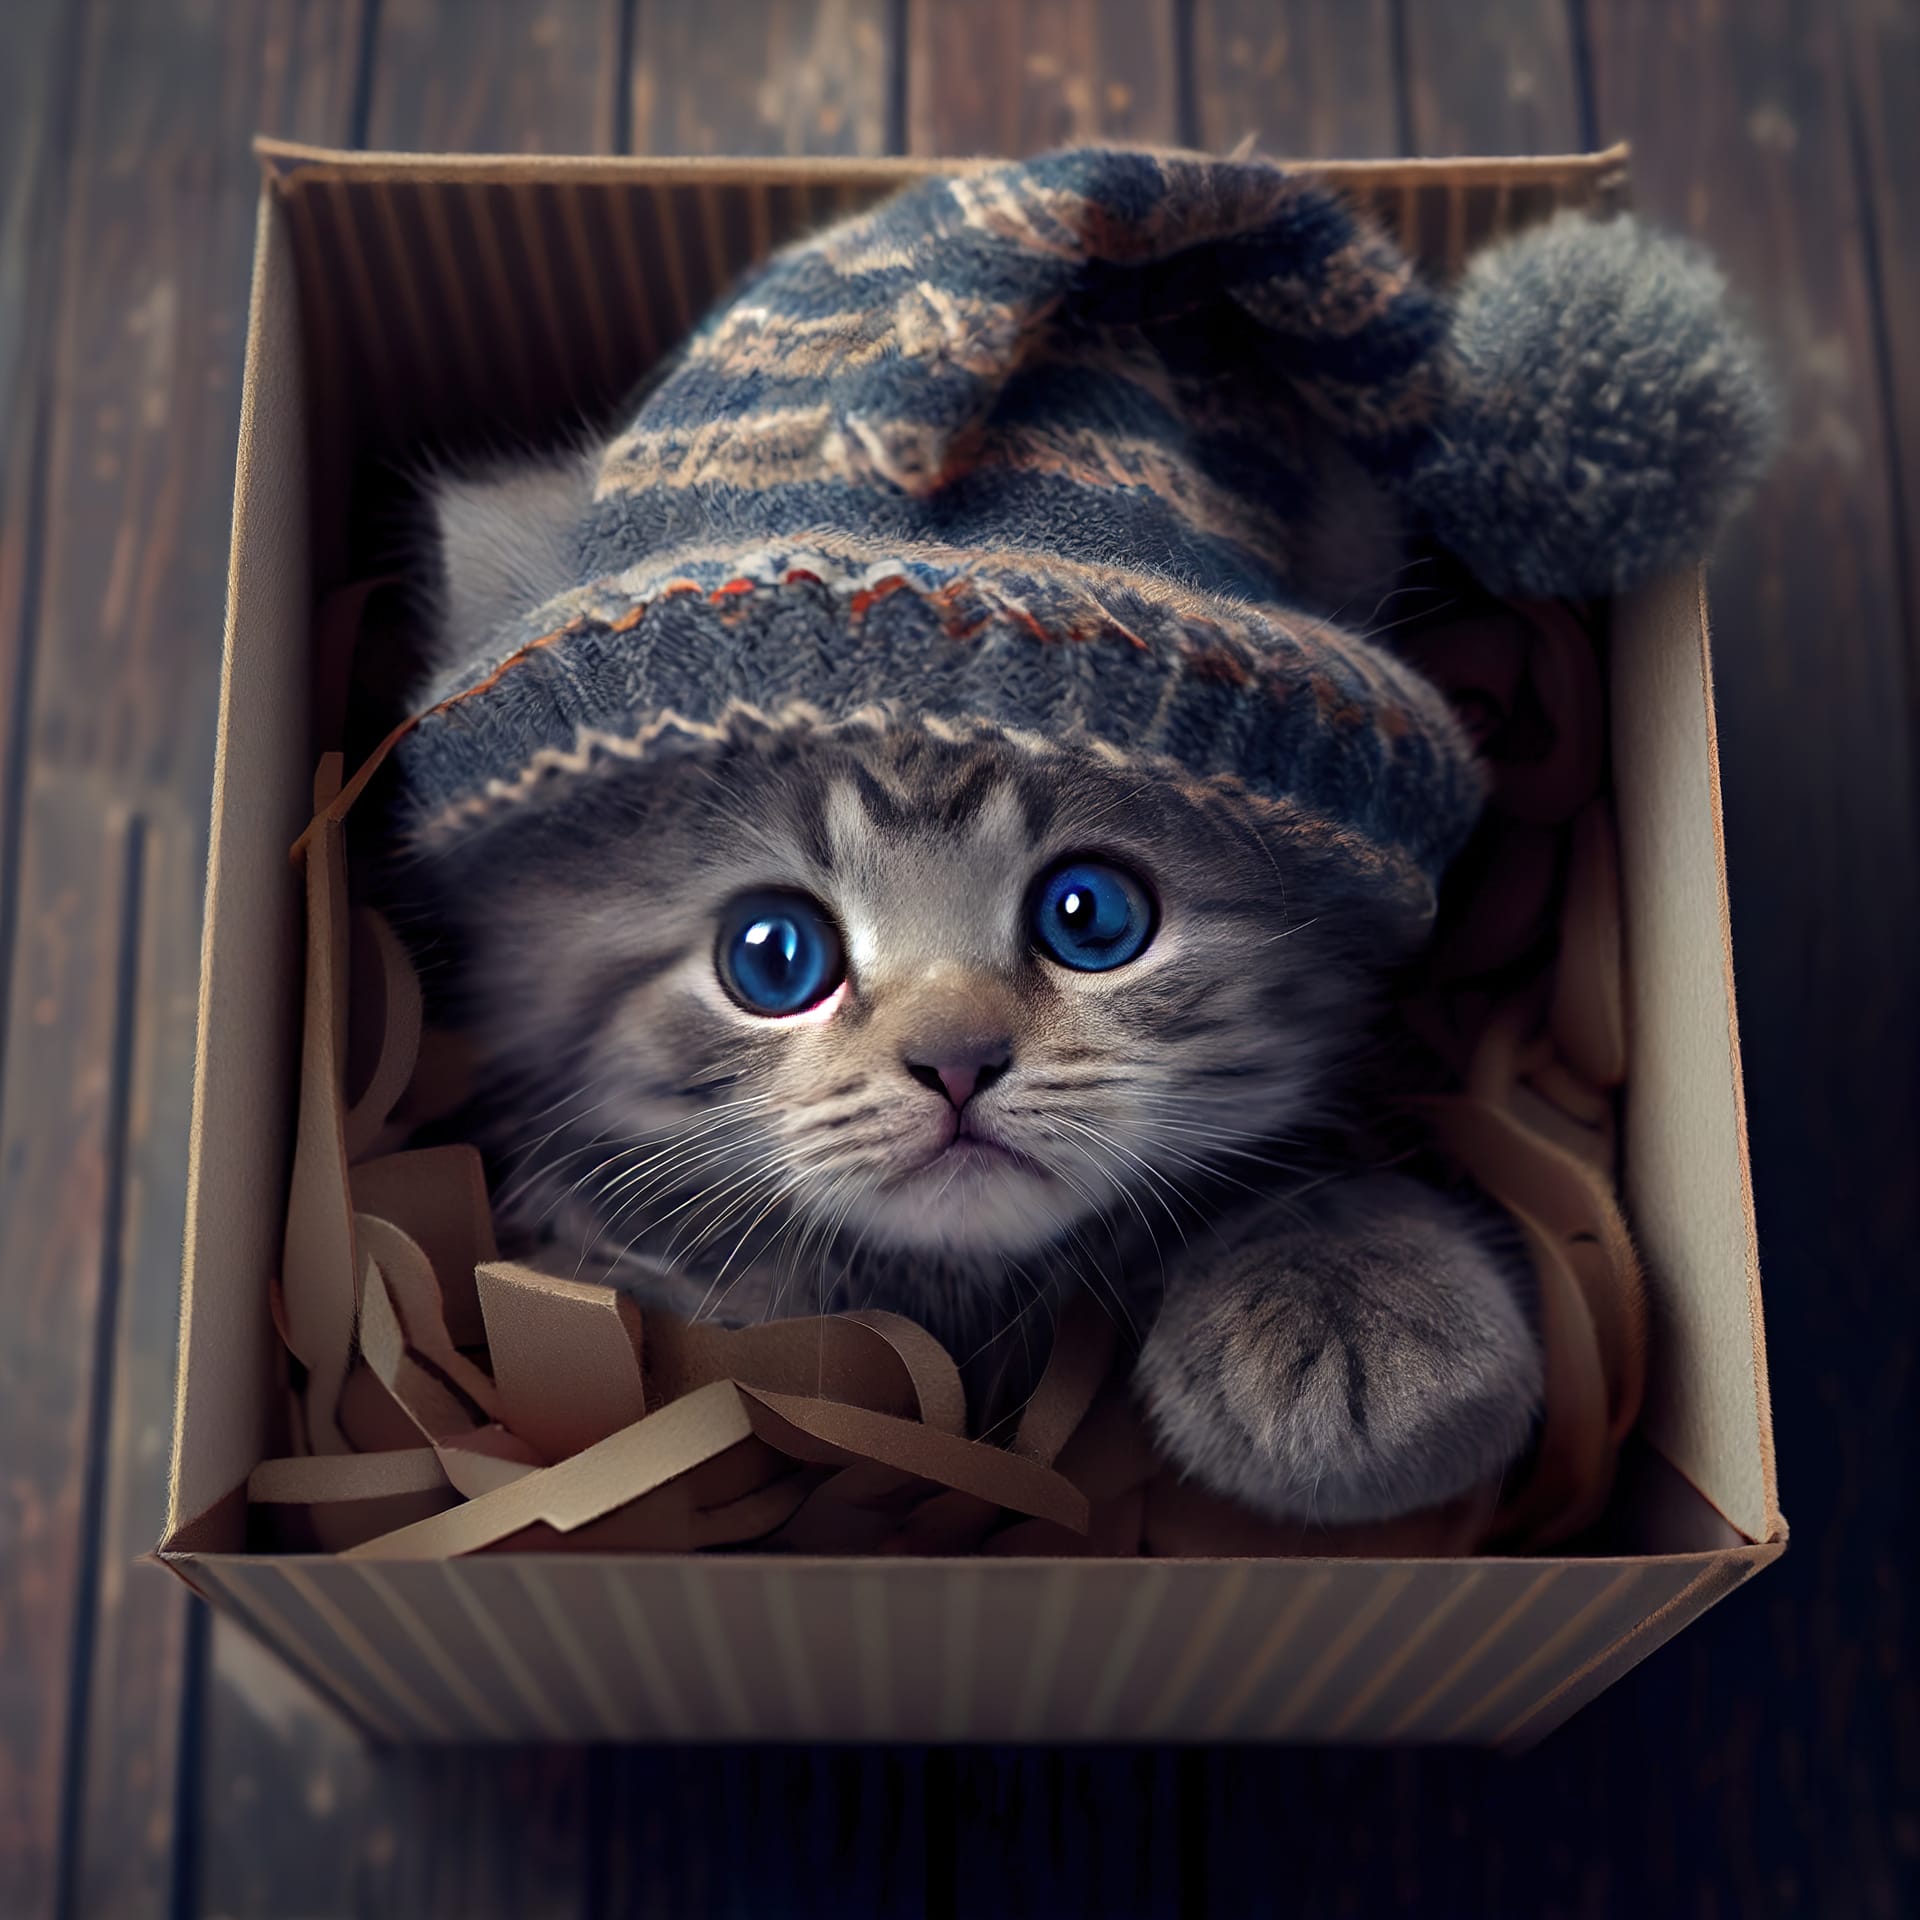 Gray striped kitten hat nside box